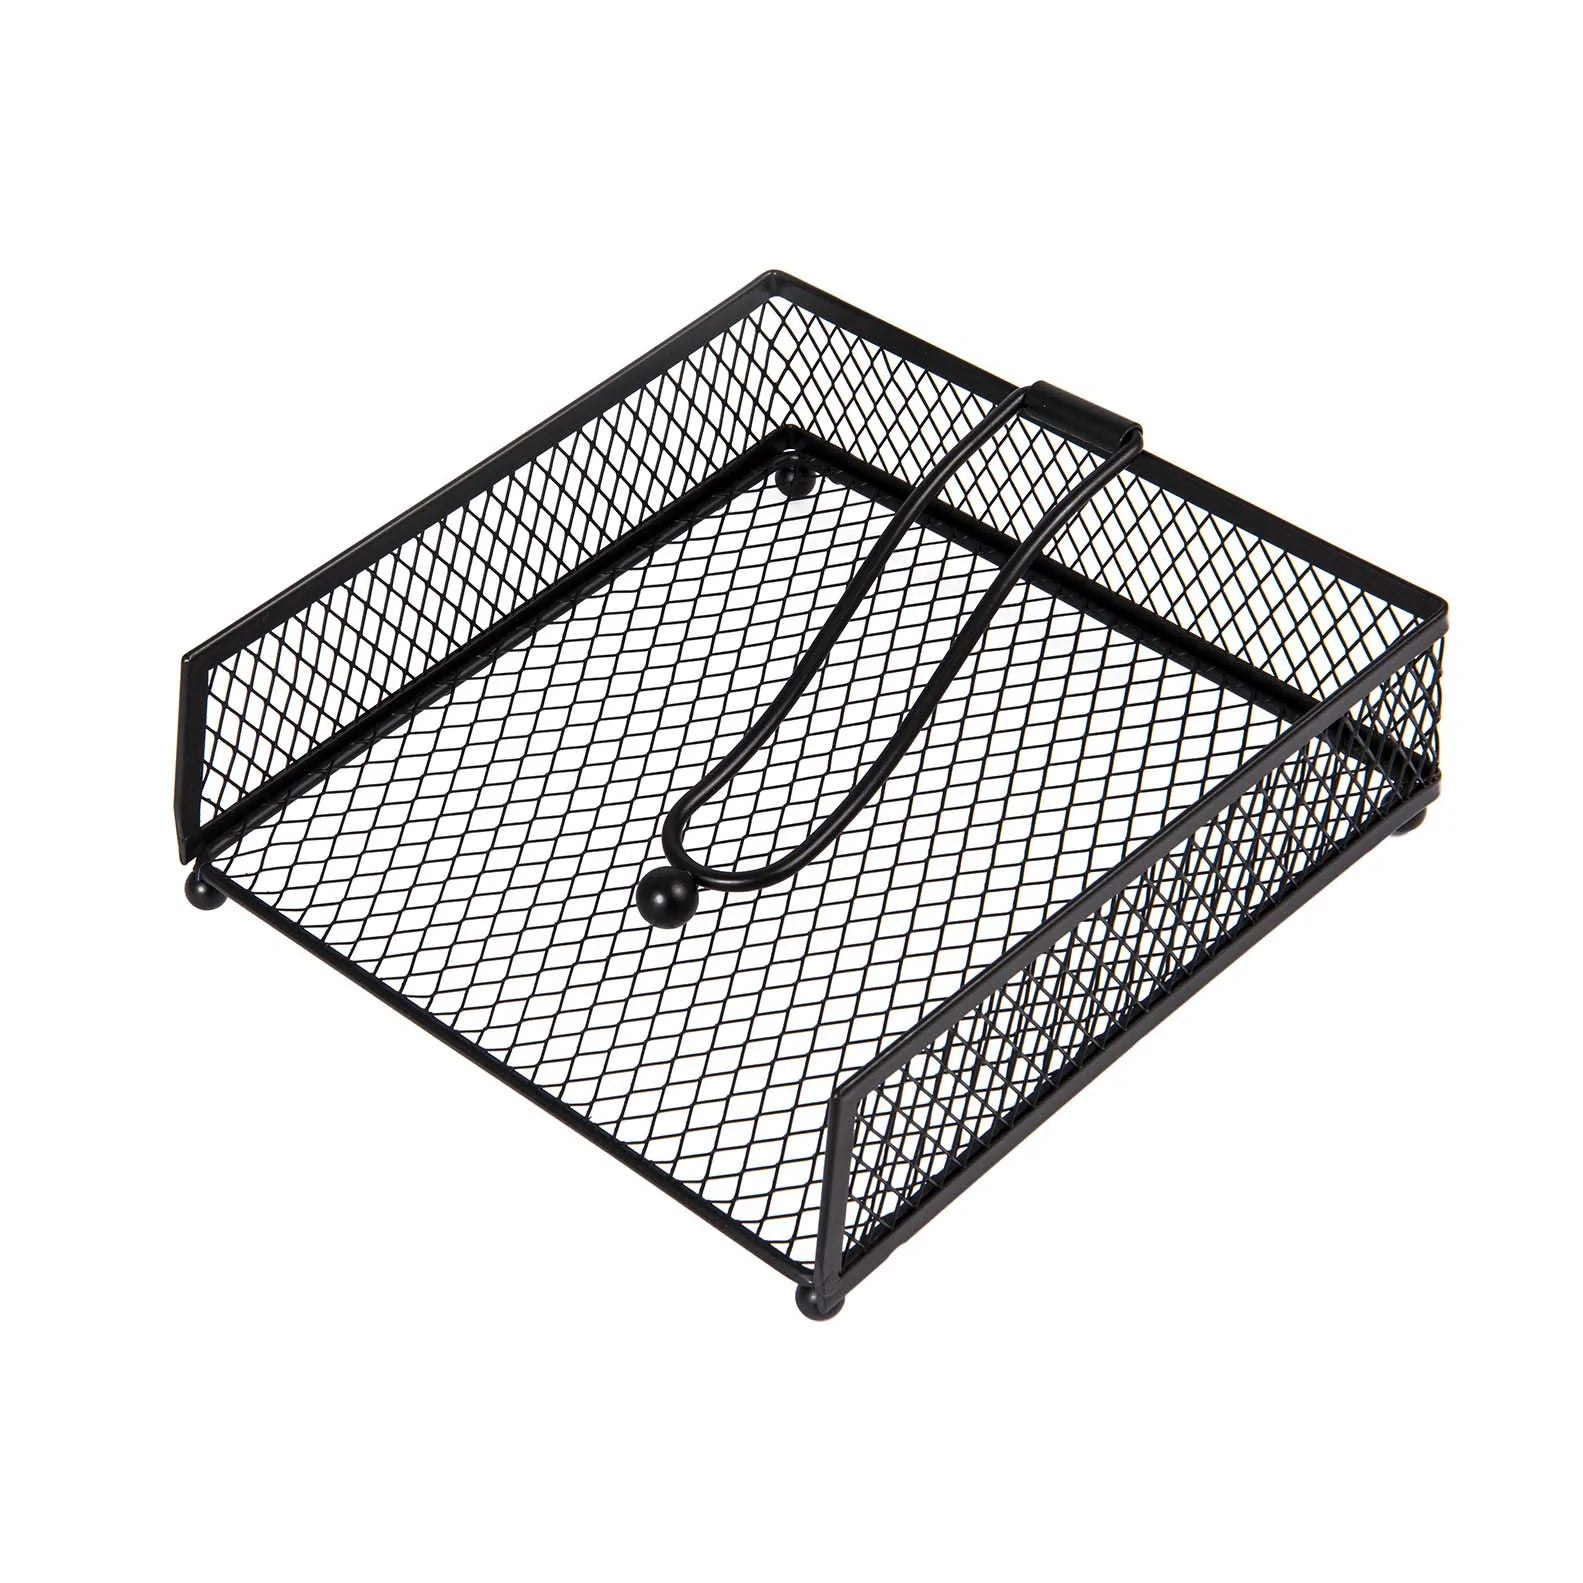 Porta serwetki w czarnej siatce metalowej linii filo –19 cm